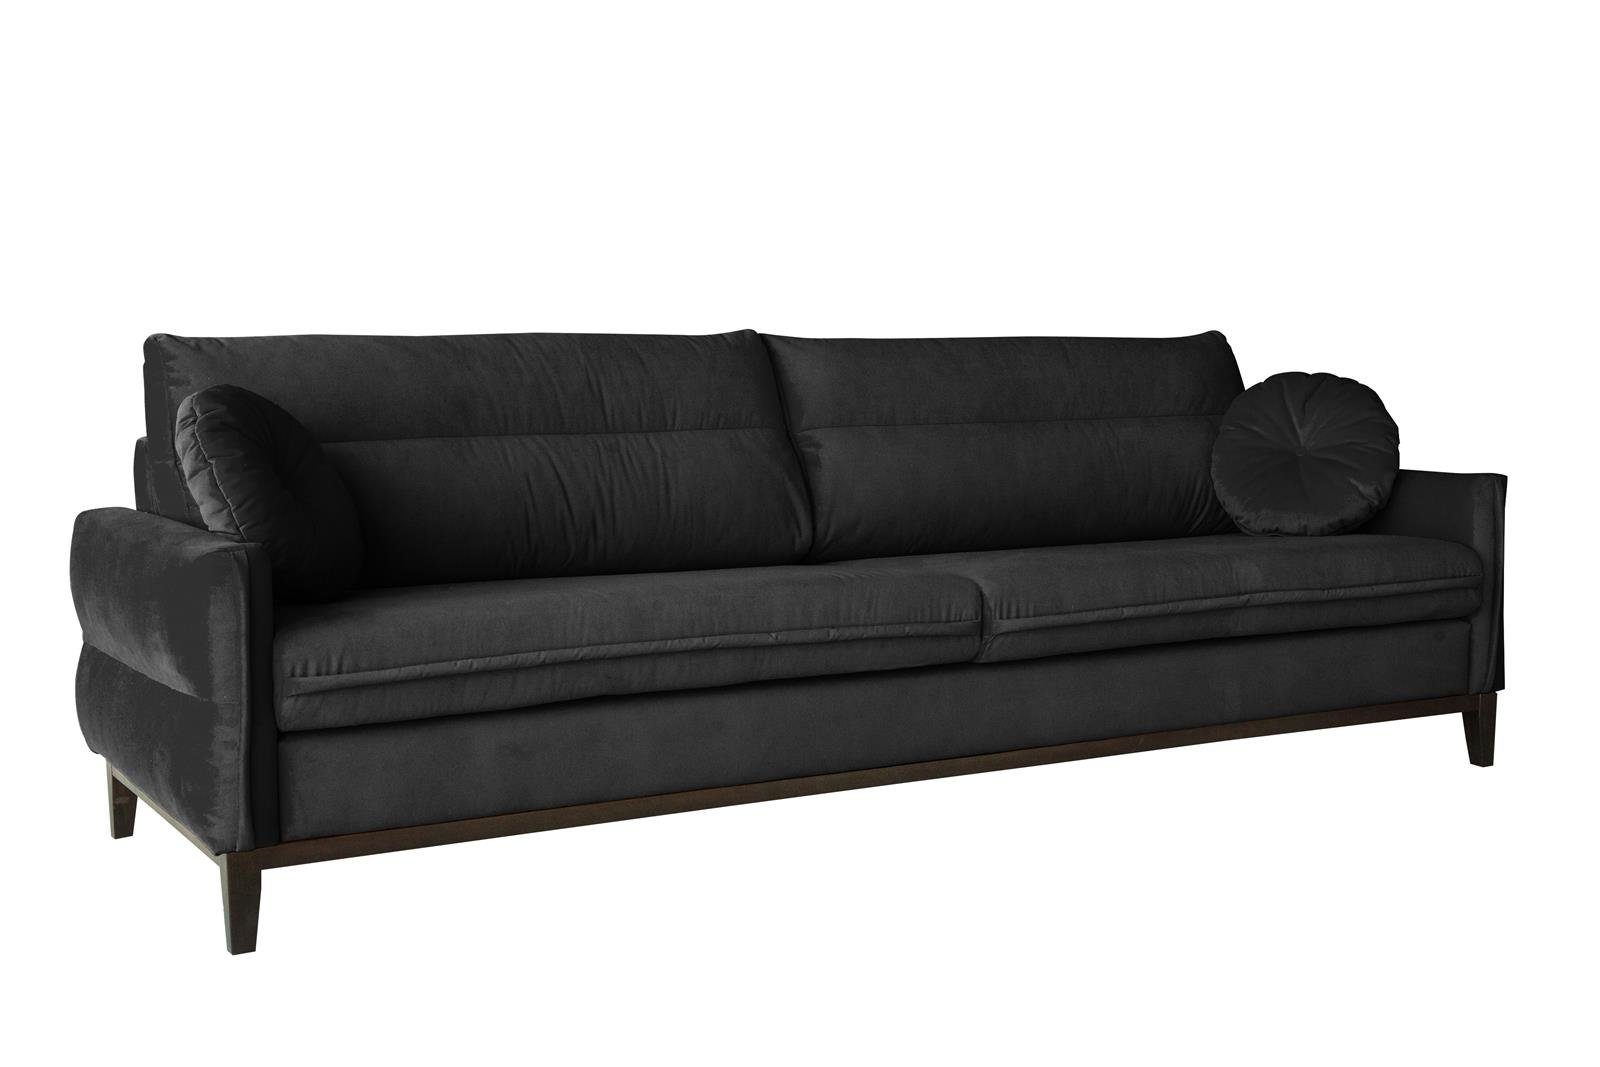 Beautysofa Sofa Belweder, 268 cm breite, Polstercouch für Wohnzimmer, 3-Sitzer Sofa aus Velourstoff, Dreisitzer im skandinavisches Stil Schwarz (kronos 07)